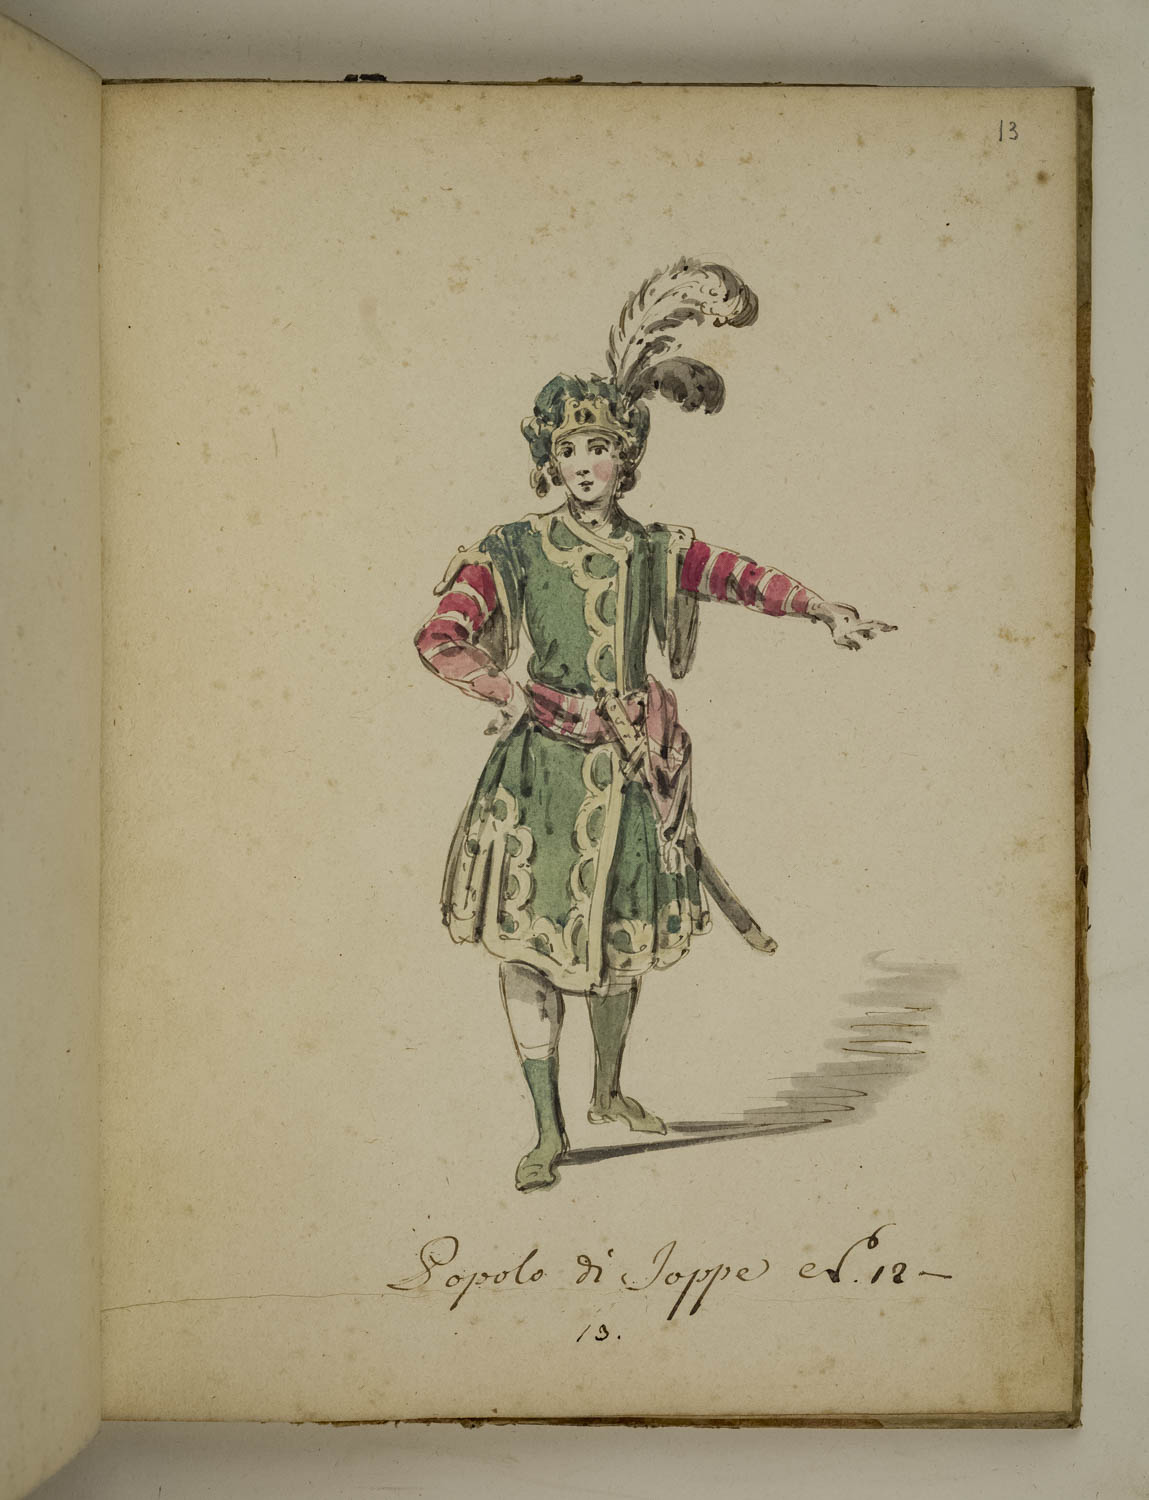 Popolo di Joppe, figurino di costume teatrale per personaggi maschili nel ruolo del popolo di Joppe (disegno) di Marini Leonardo (terzo quarto sec. XVIII)